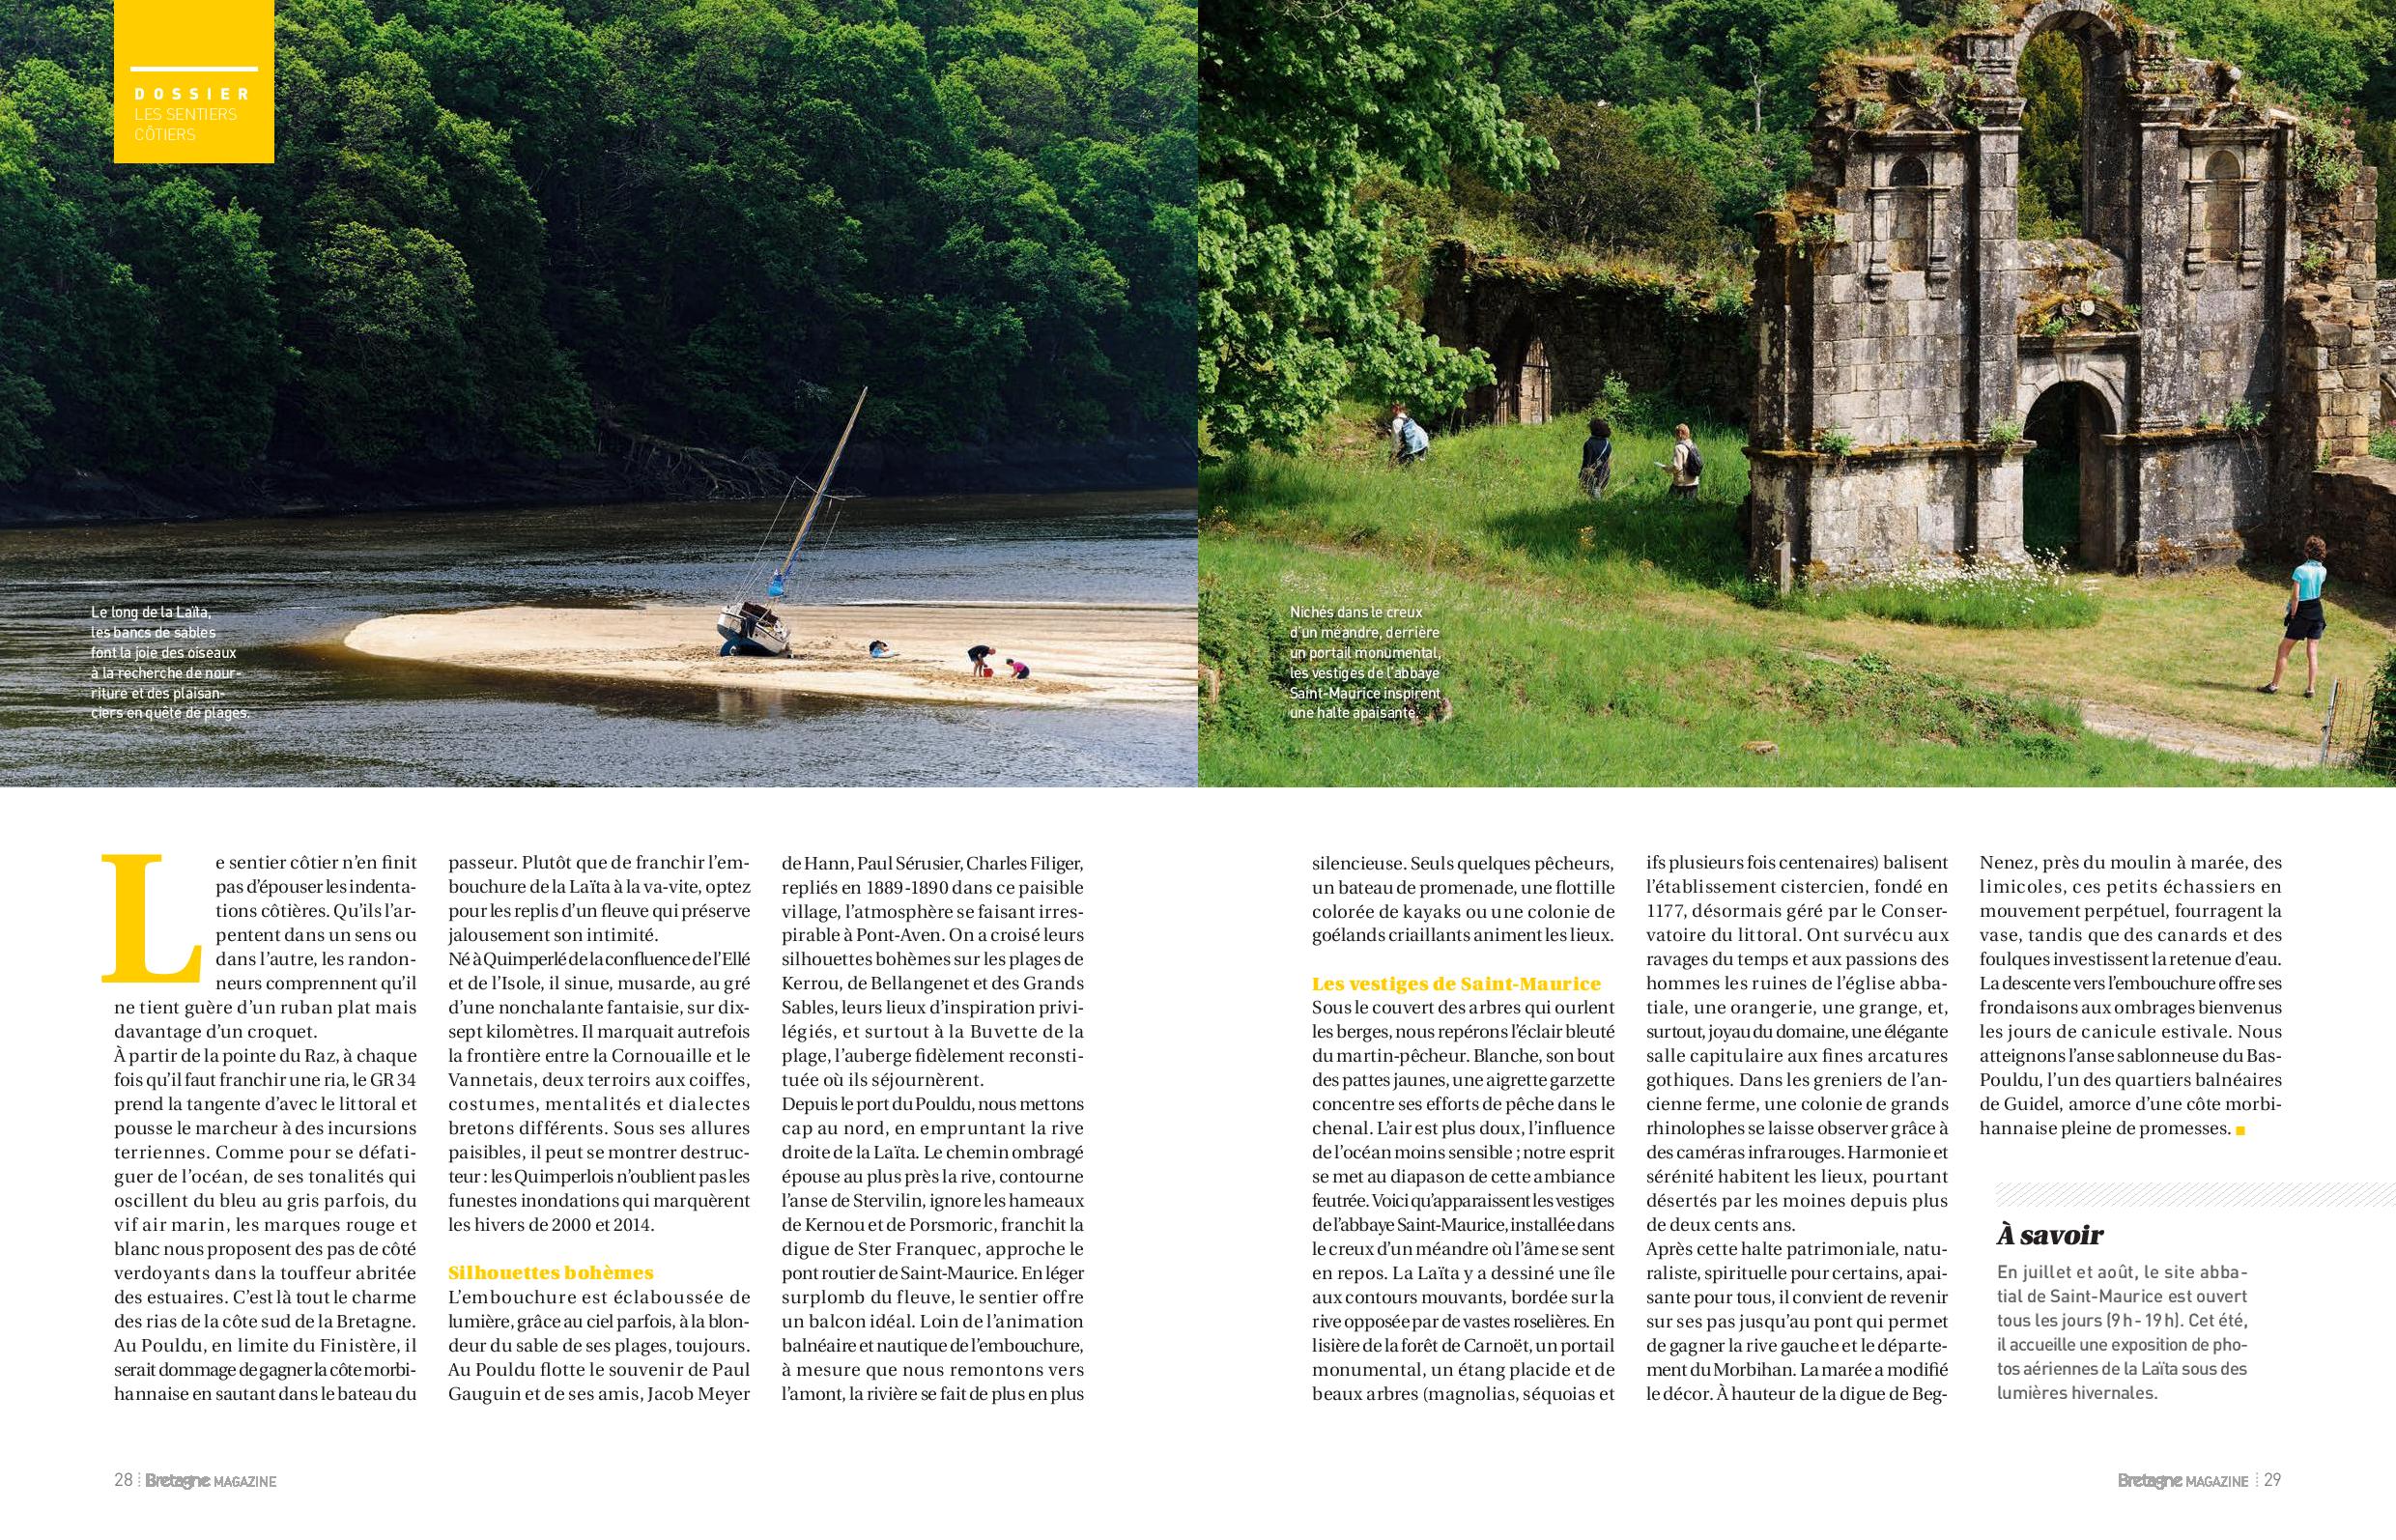 La balade au bord de la Laïta, aperçu de l'article de Bretagne Magazine